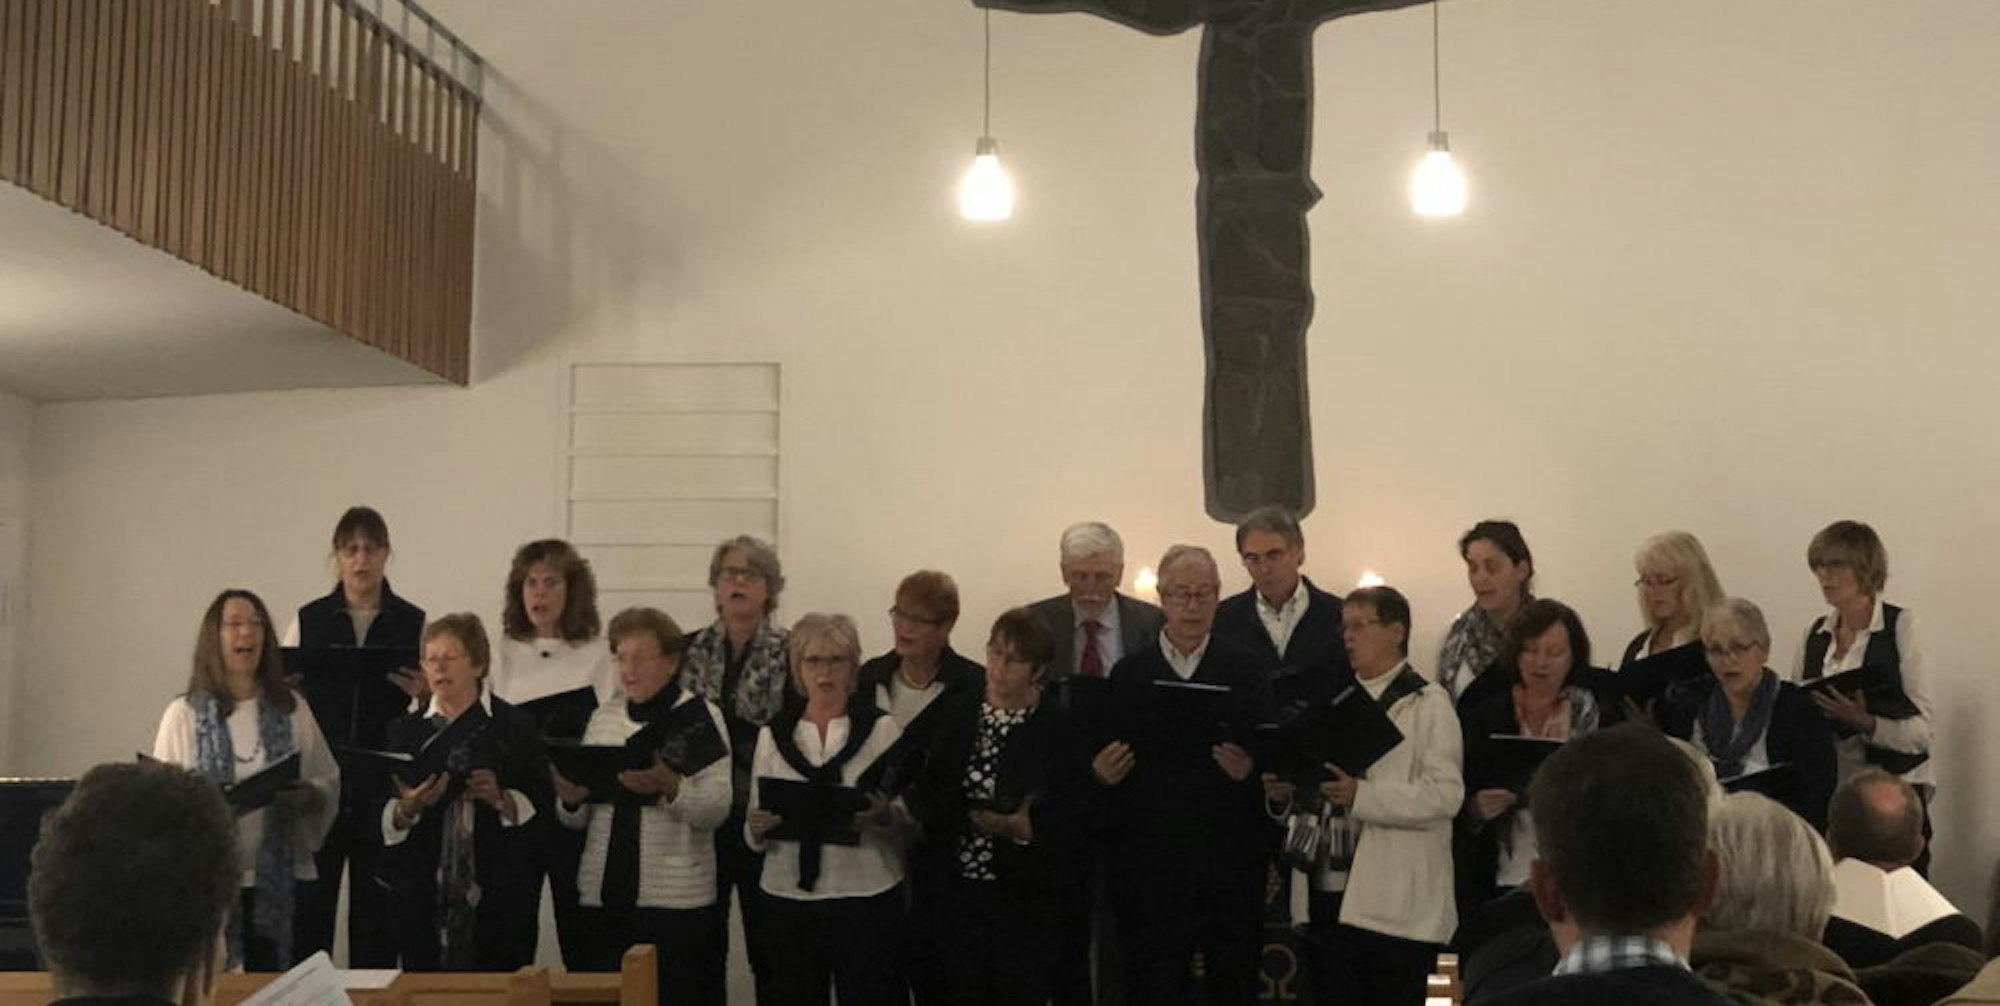 Mit einem Konzert in der evangelischen Friedenskirche begann die Aktion in Bedburg.